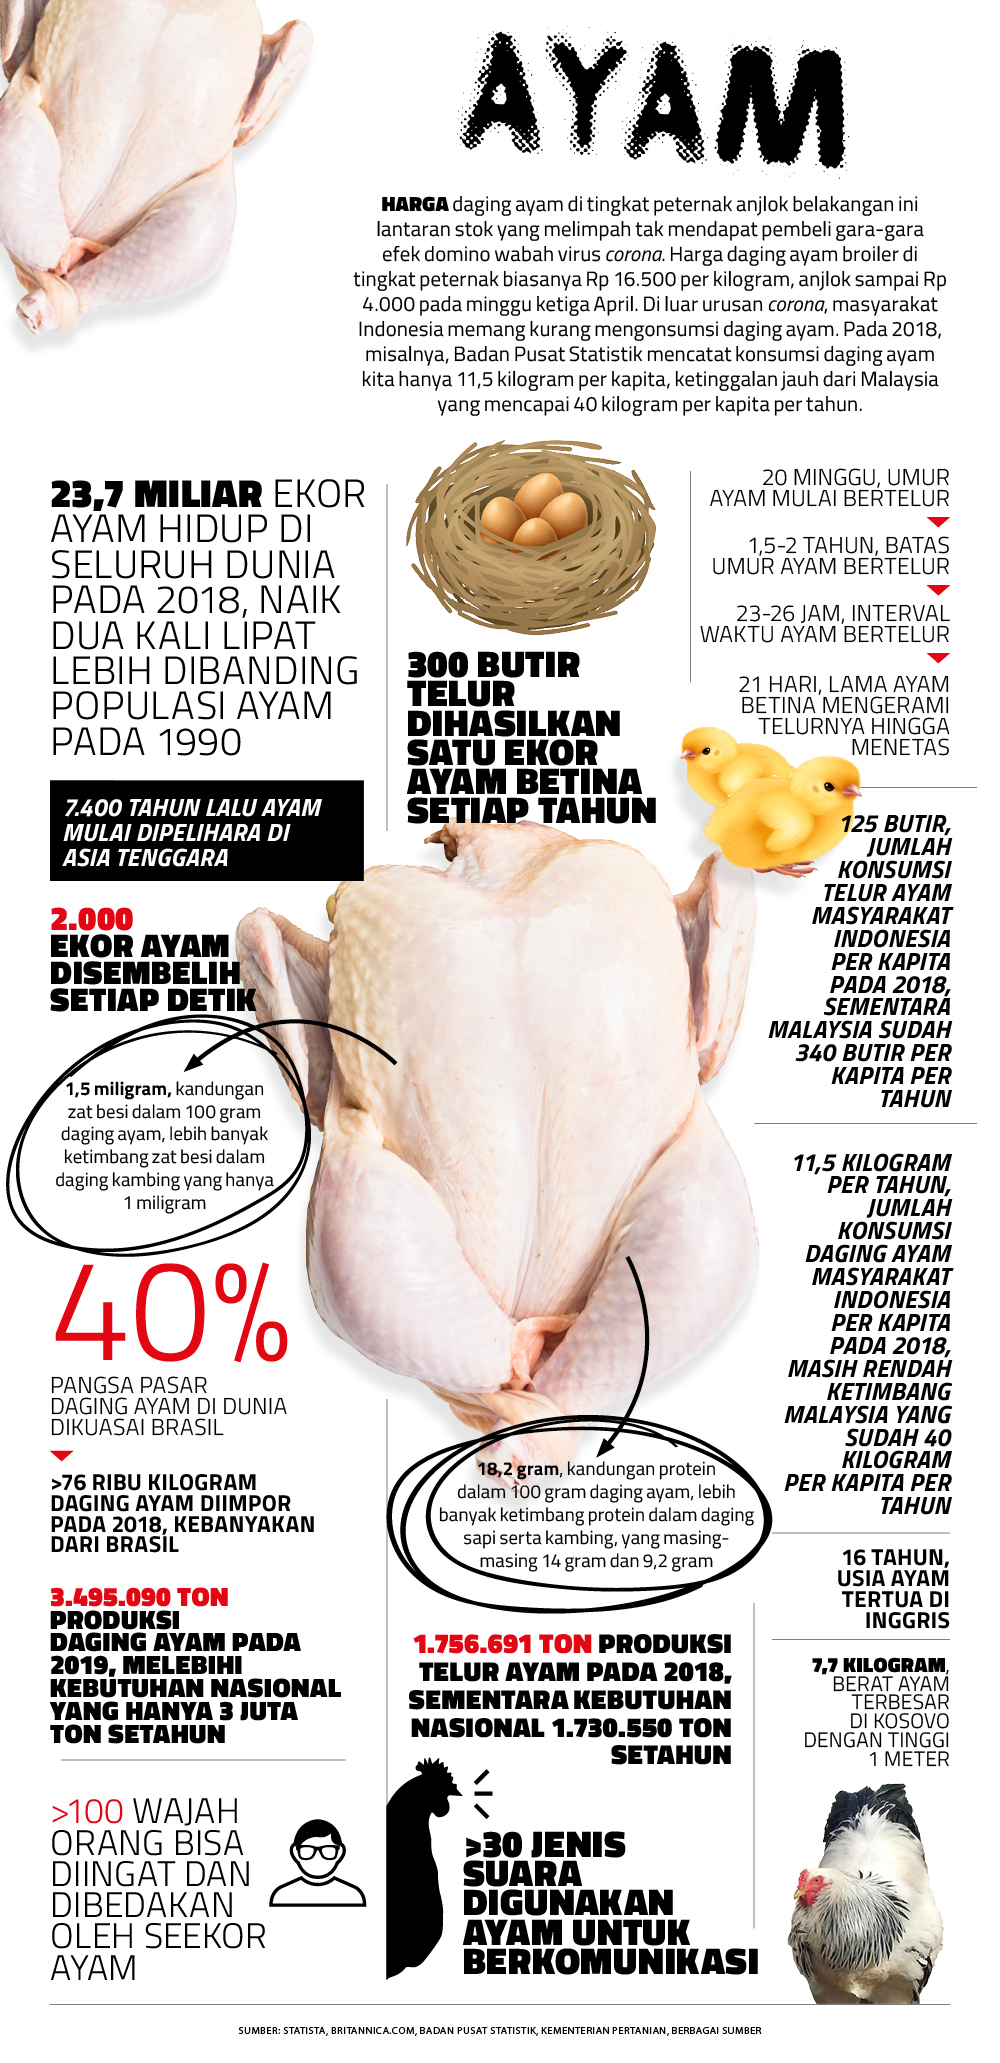 Ayam dalam Angka: Dari Telur hingga Jenis Suaranya - Angka - majalah